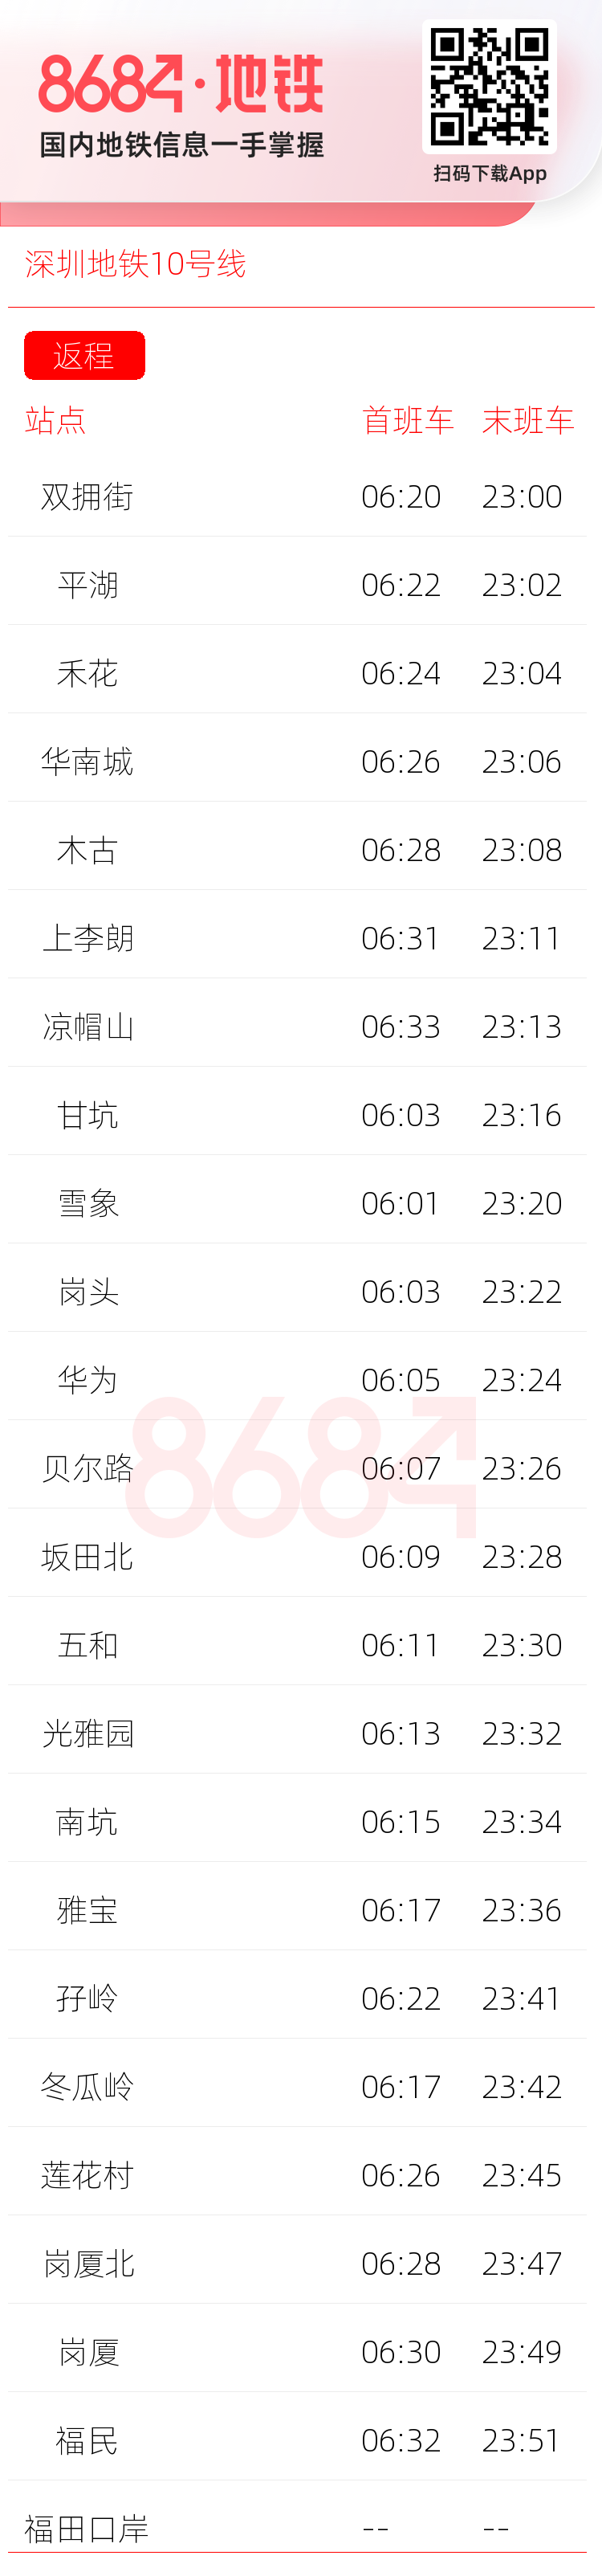 深圳地铁10号线运营时间表